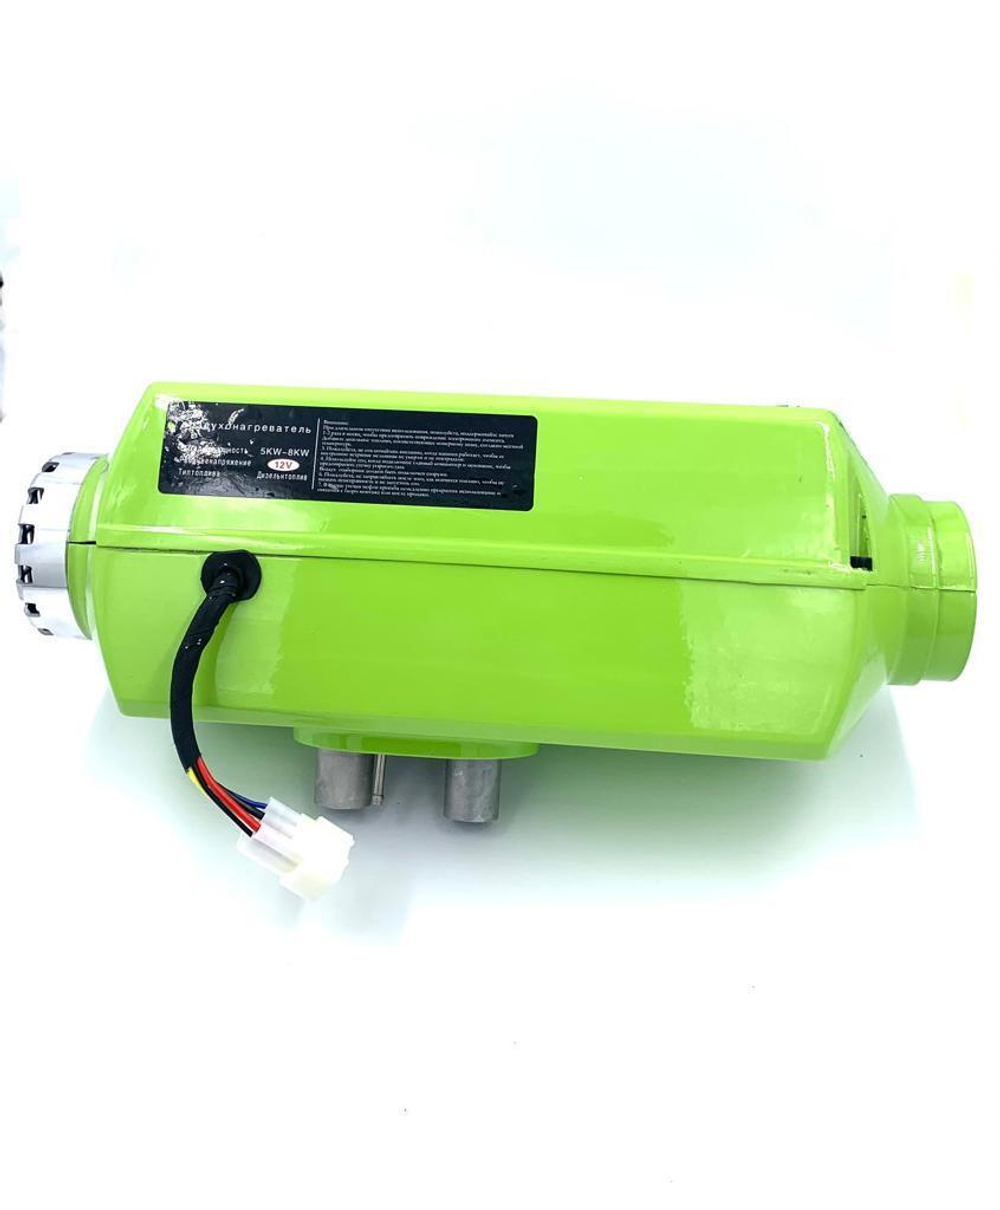 Автономный отопитель дизельный 12В 5-8кВт Satdpro автономка / сухой фен / воздушный обогреватель